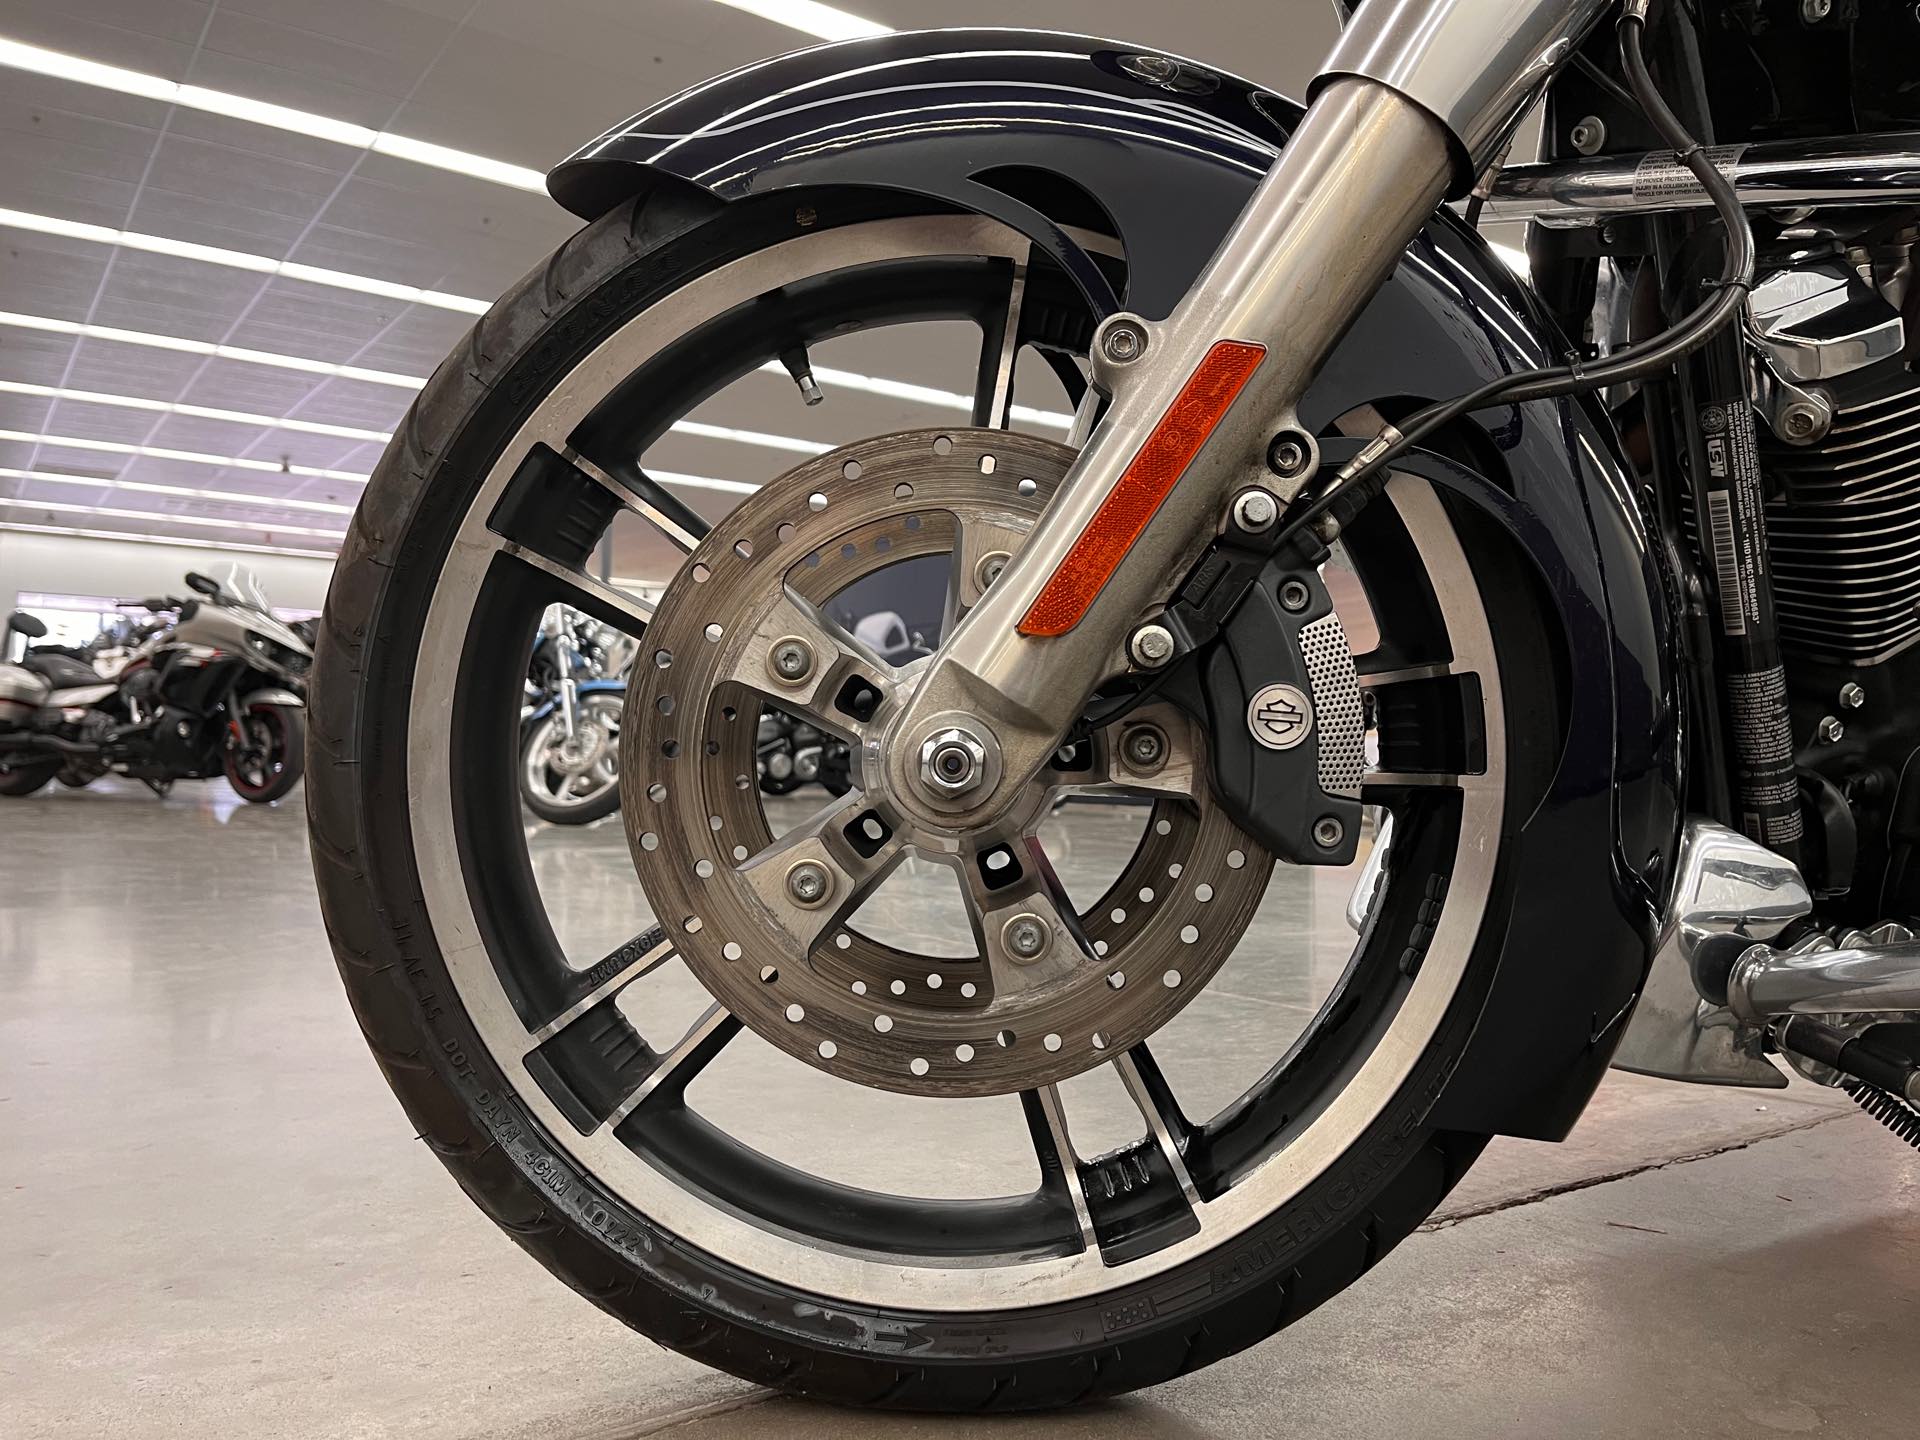 2019 Harley-Davidson Street Glide Base at Aces Motorcycles - Denver